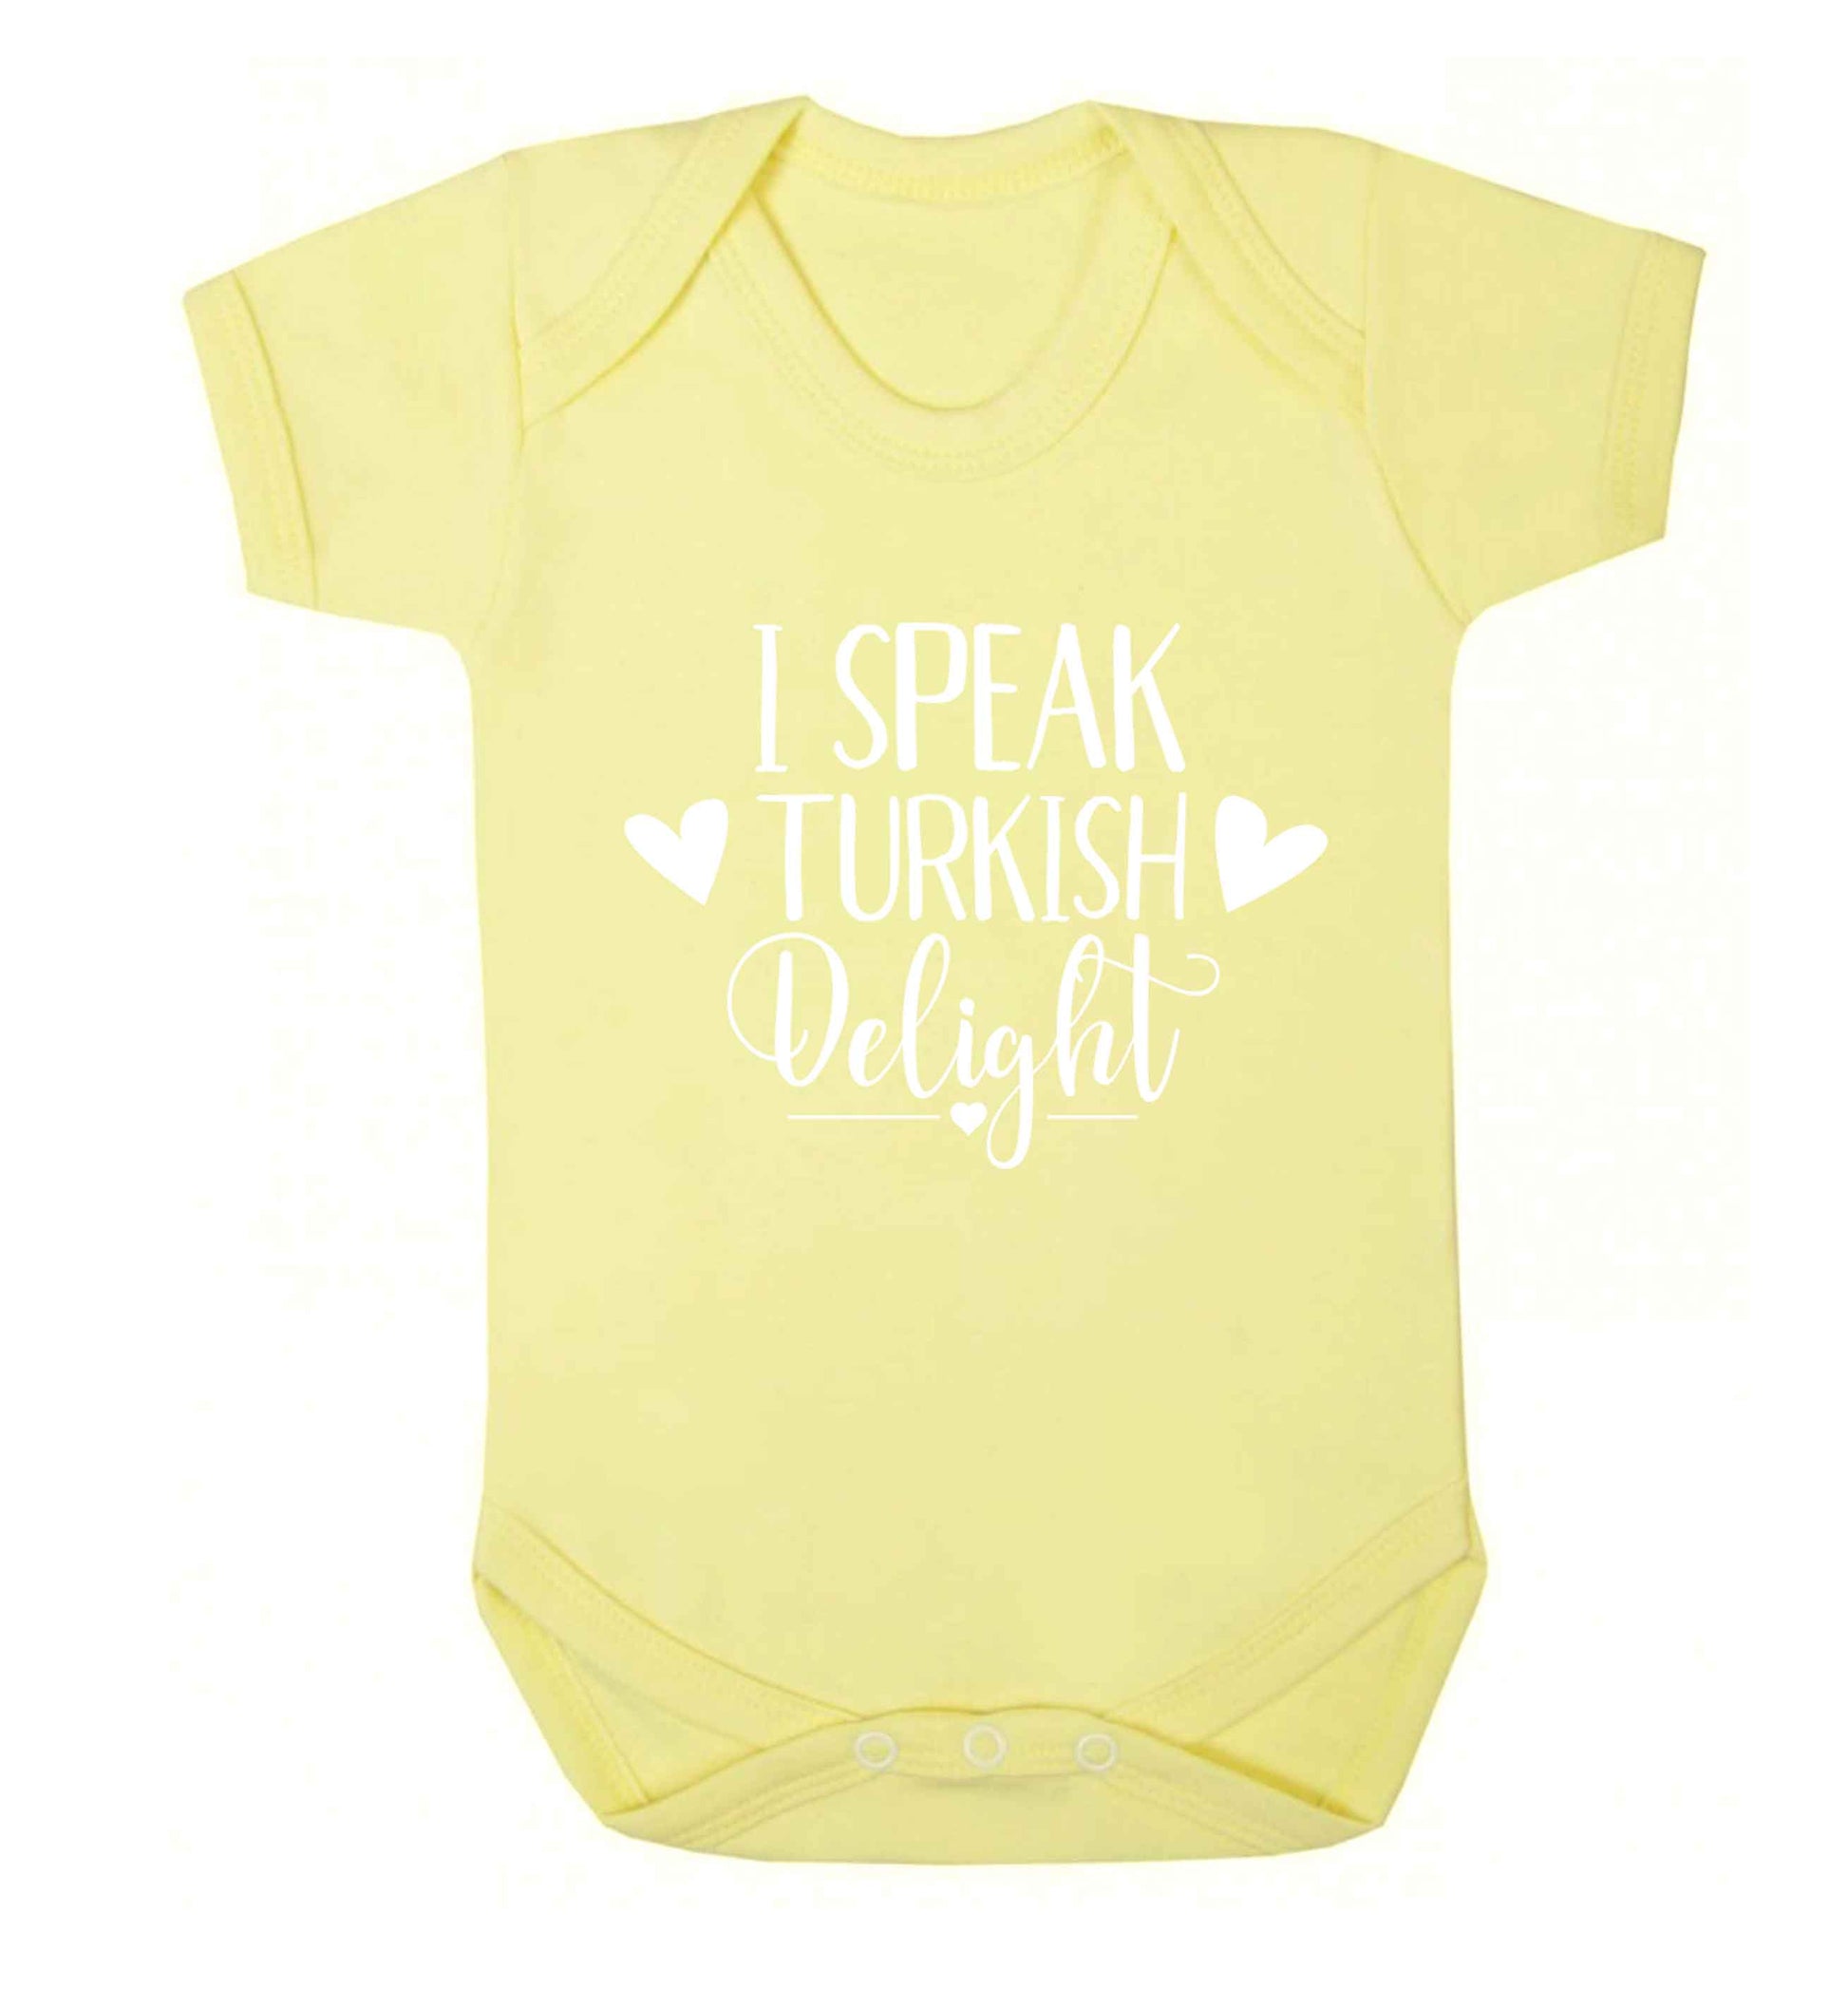 I speak turkish...delight Baby Vest pale yellow 18-24 months